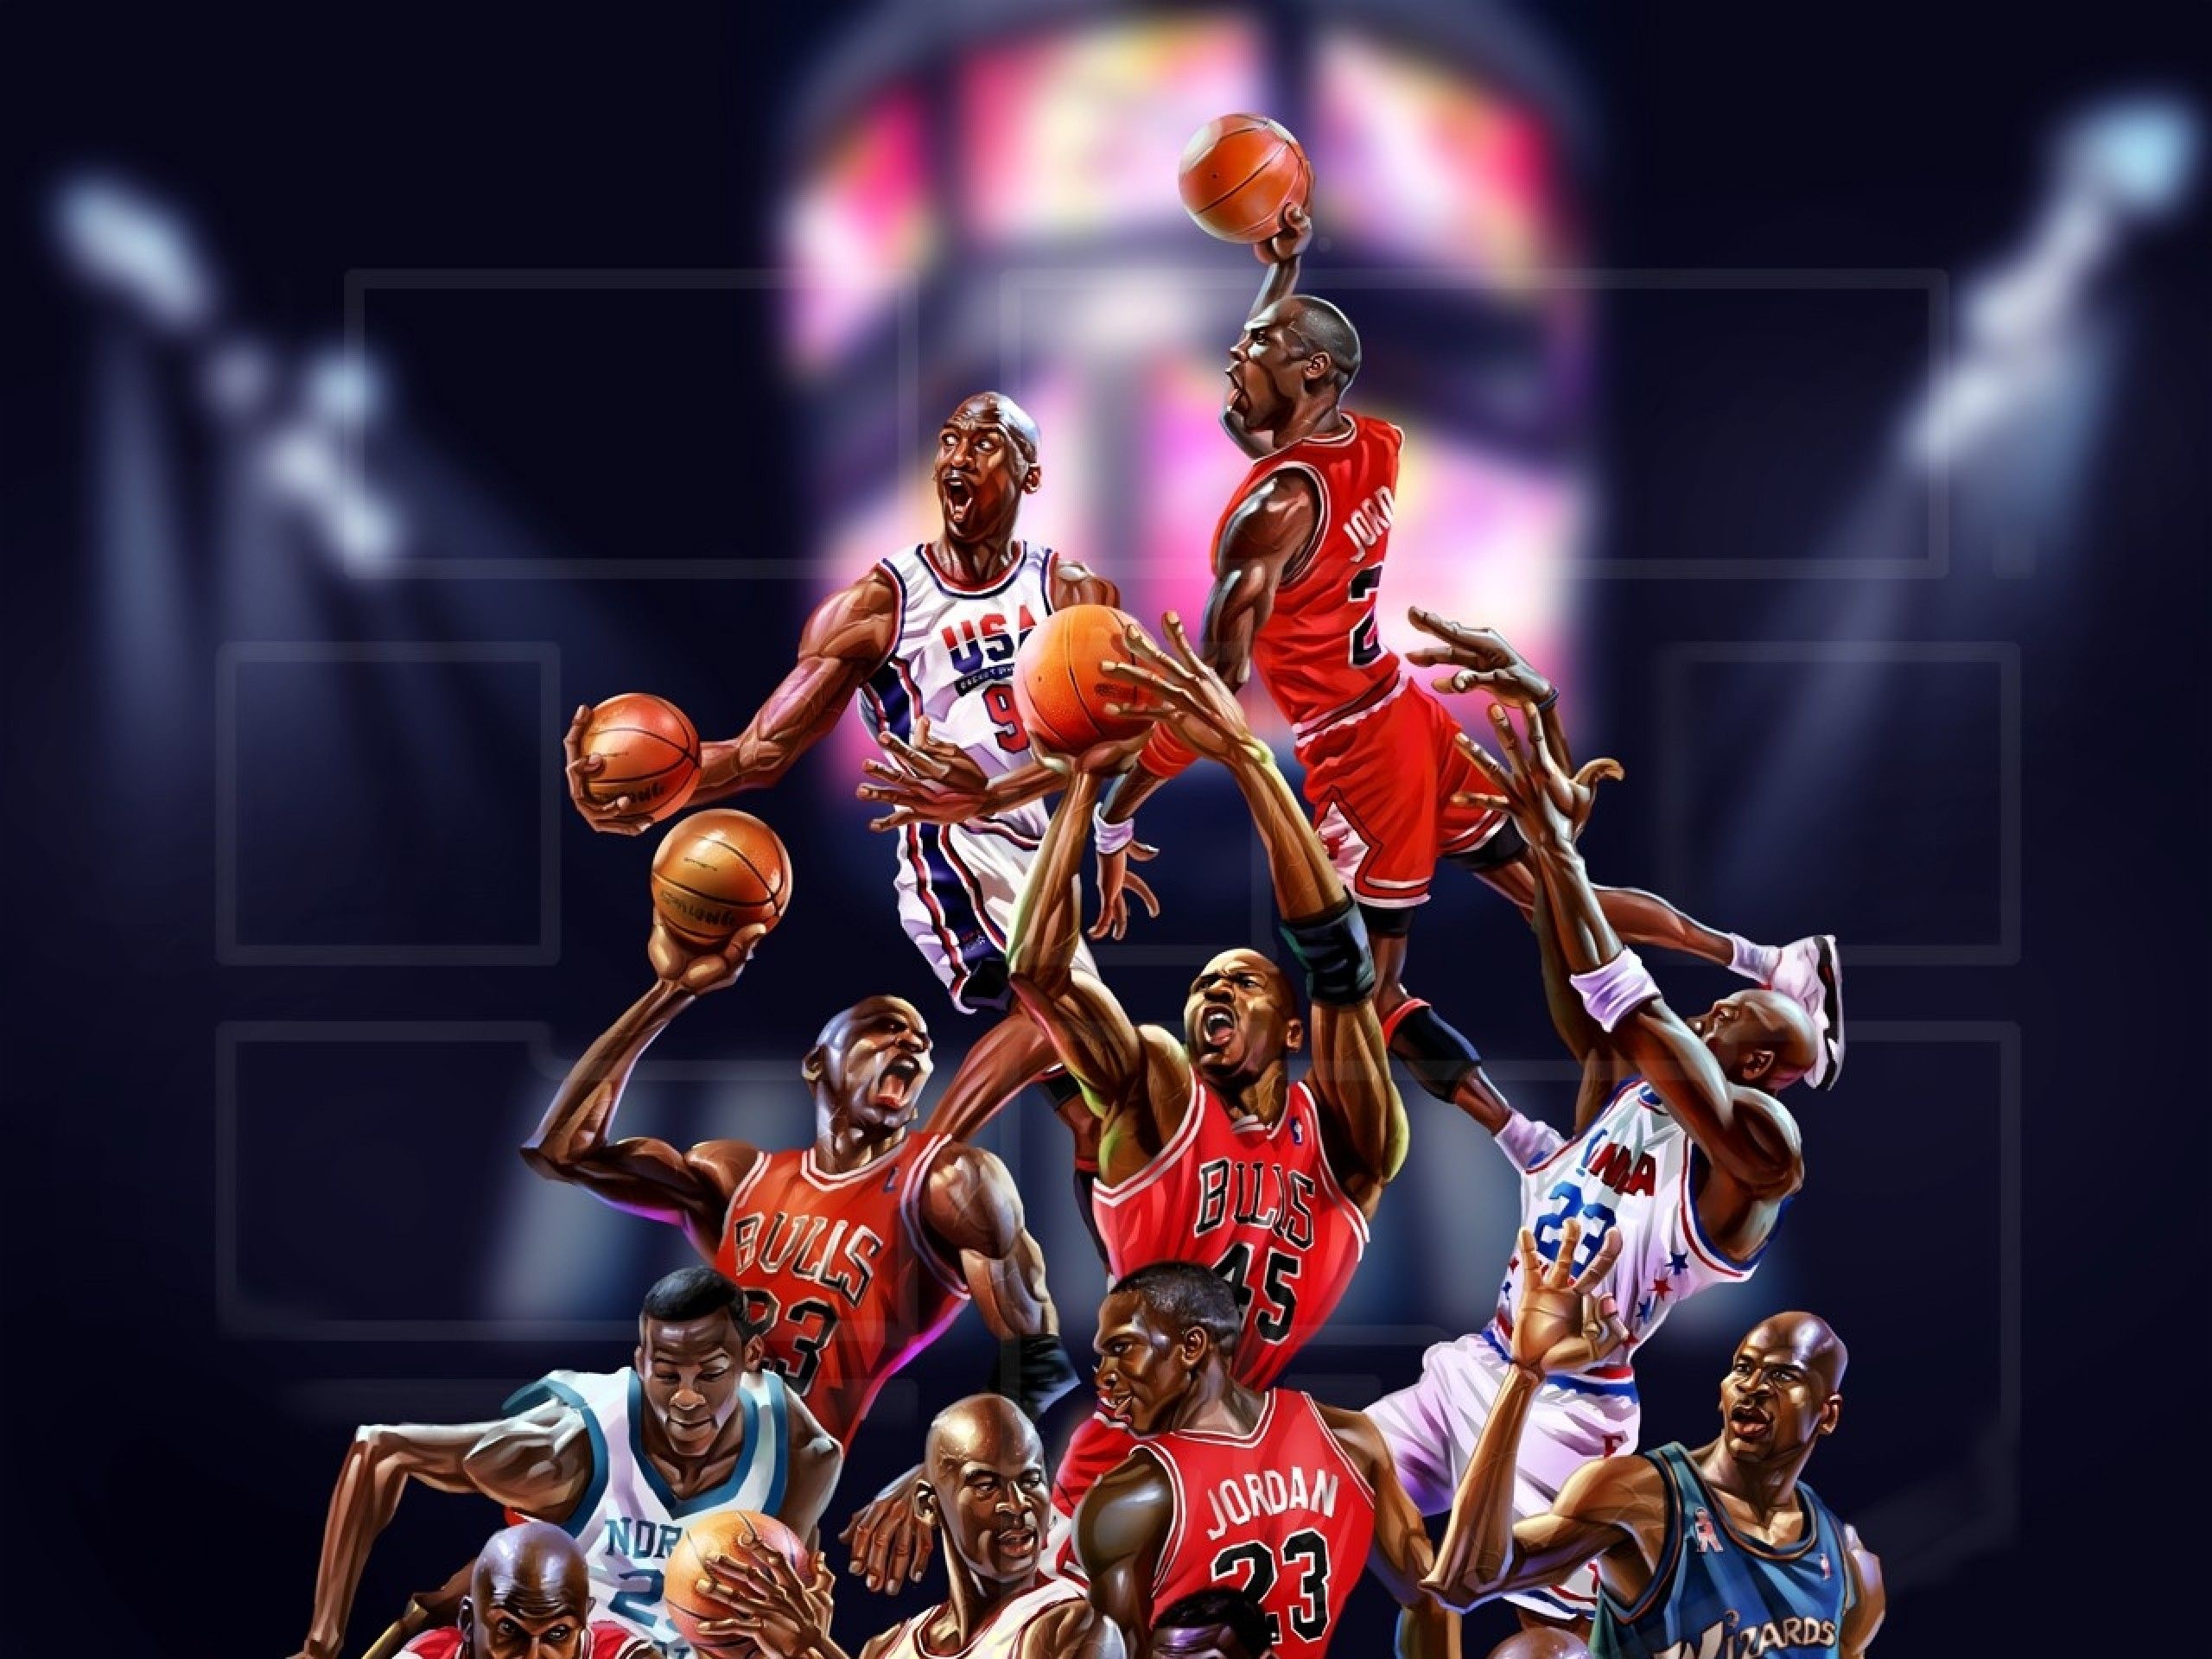 High Quality NBA Wallpapers - WallpaperSafari